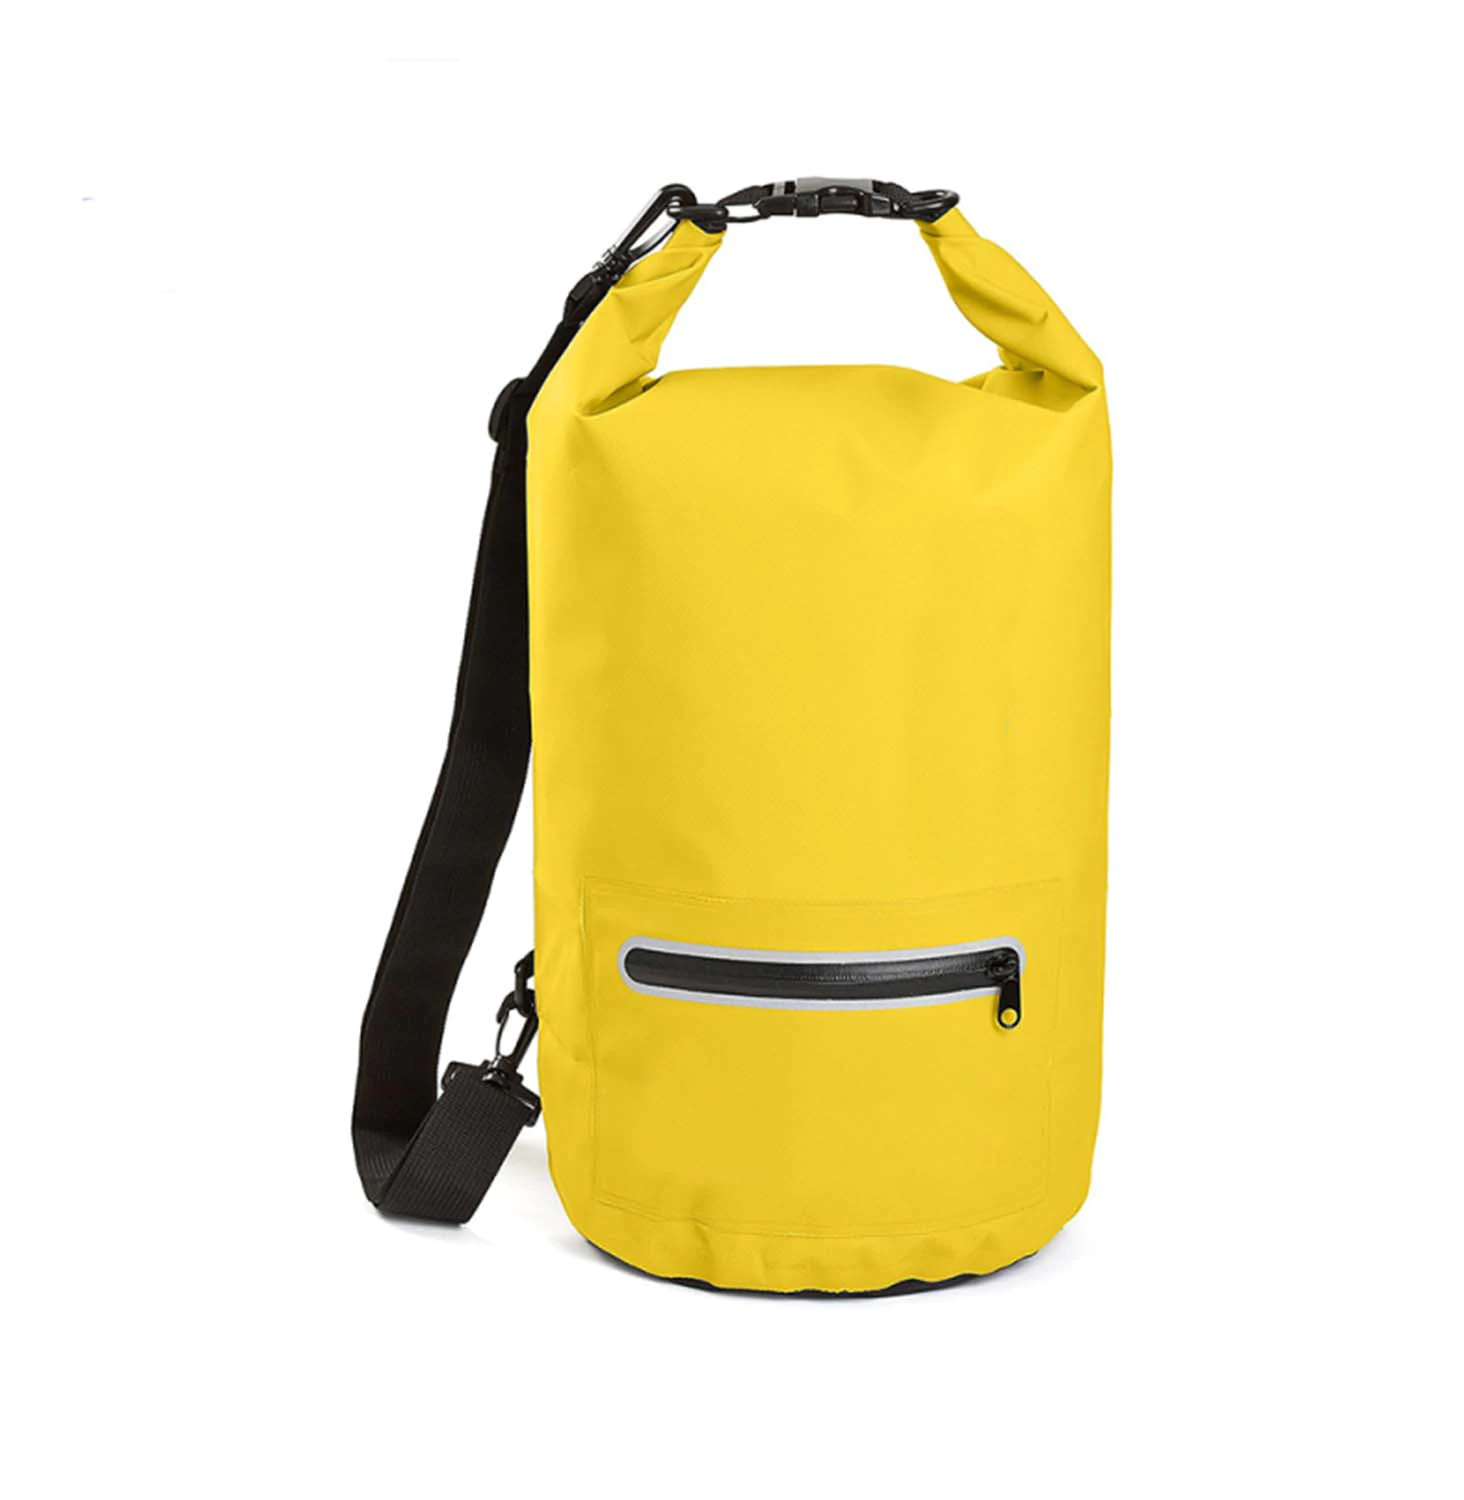 Prosperity outdoor best dry bag with adjustable shoulder strap for boating